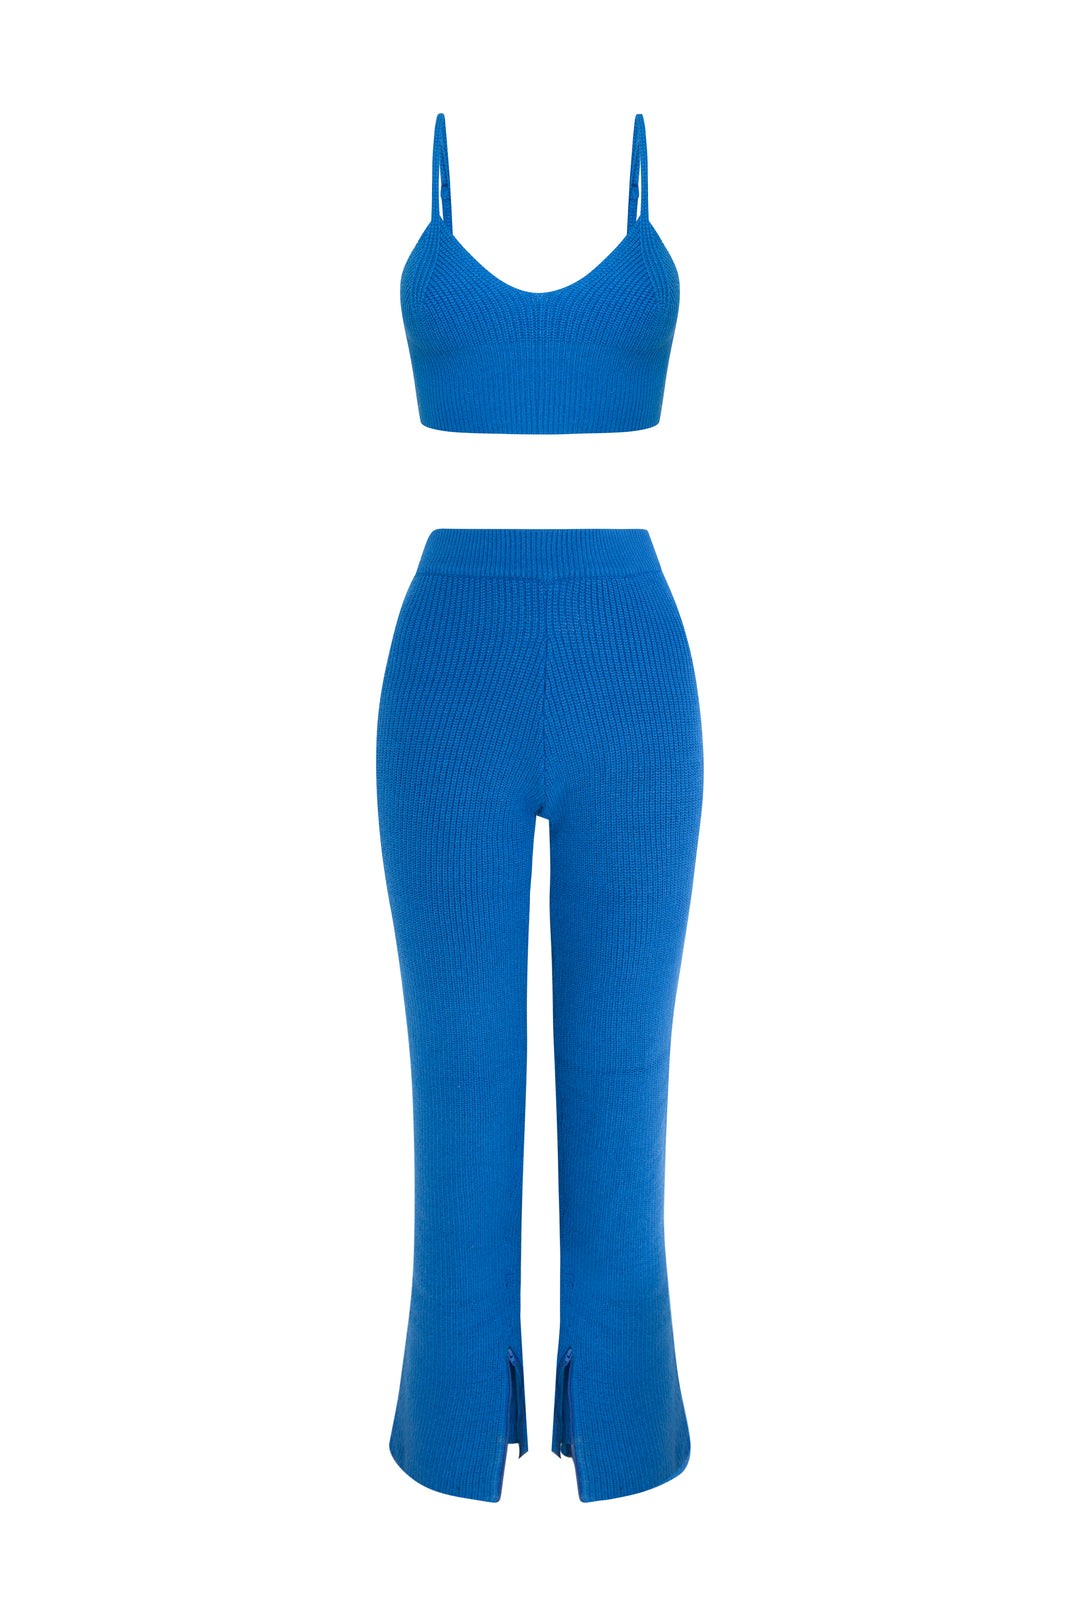 Azul - Conjunto de ropa de estar por casa con pantalón de punto con dobladillo dividido “Otoño”, jersey corto con doble cremallera y bralet